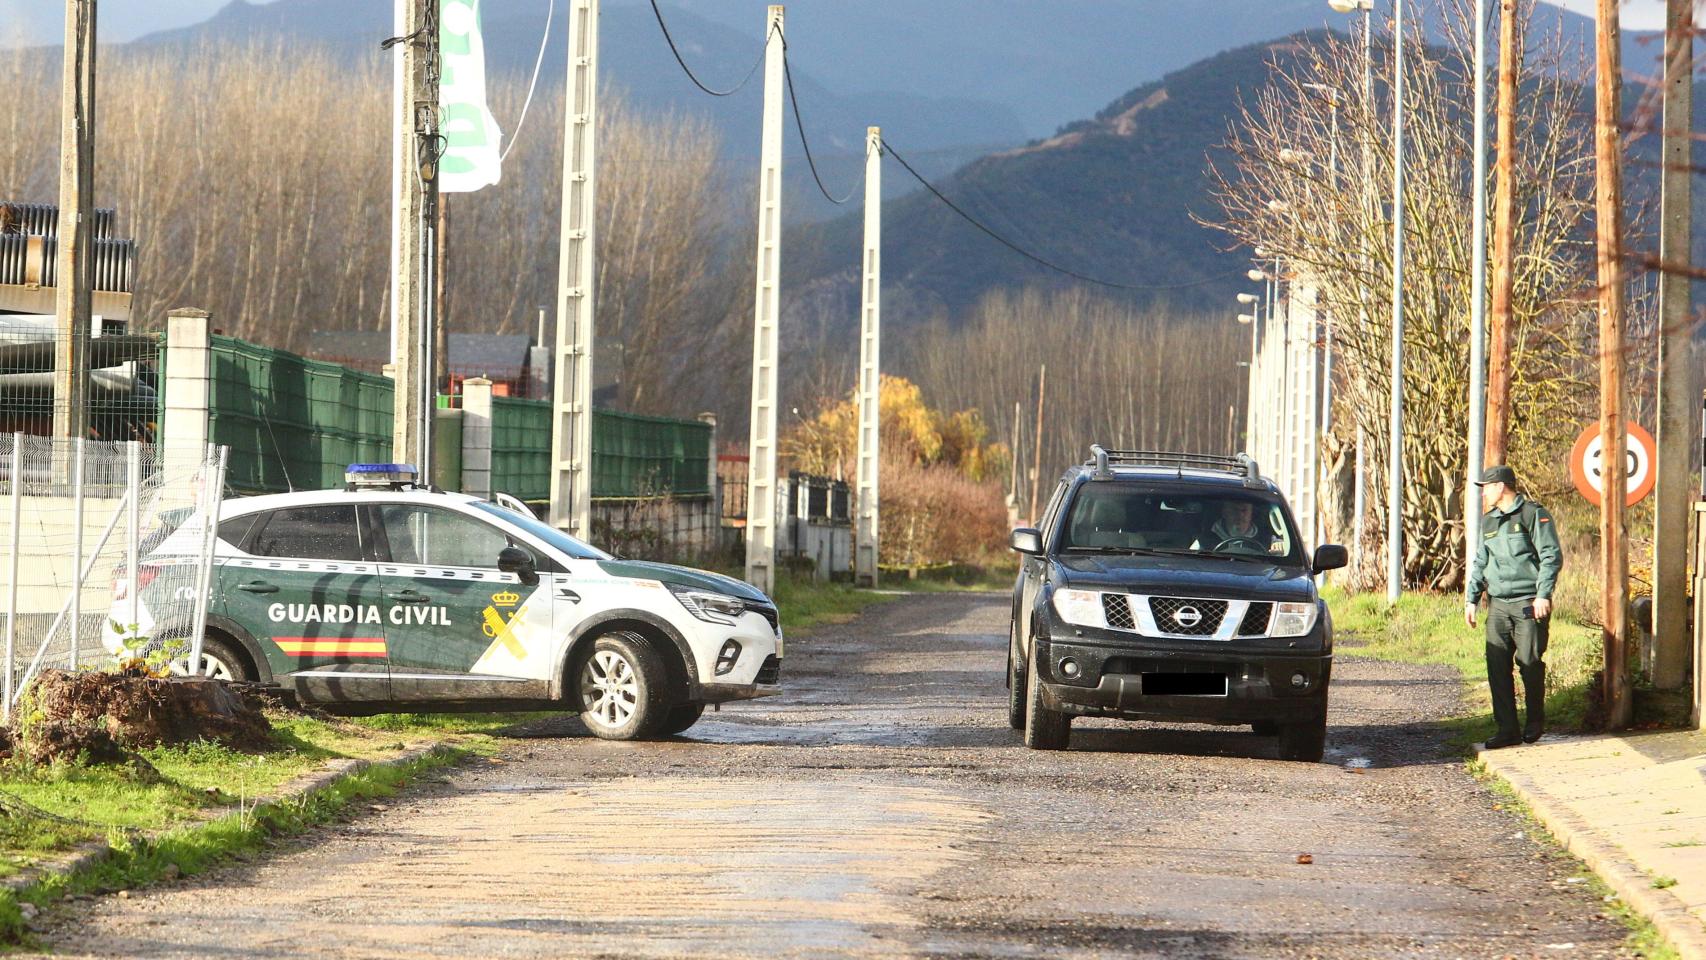 La Guardia Civil en un control en Posada del Bierzo, donde inició una búsqueda del presunto autor del homicidio de un joven de 25 años